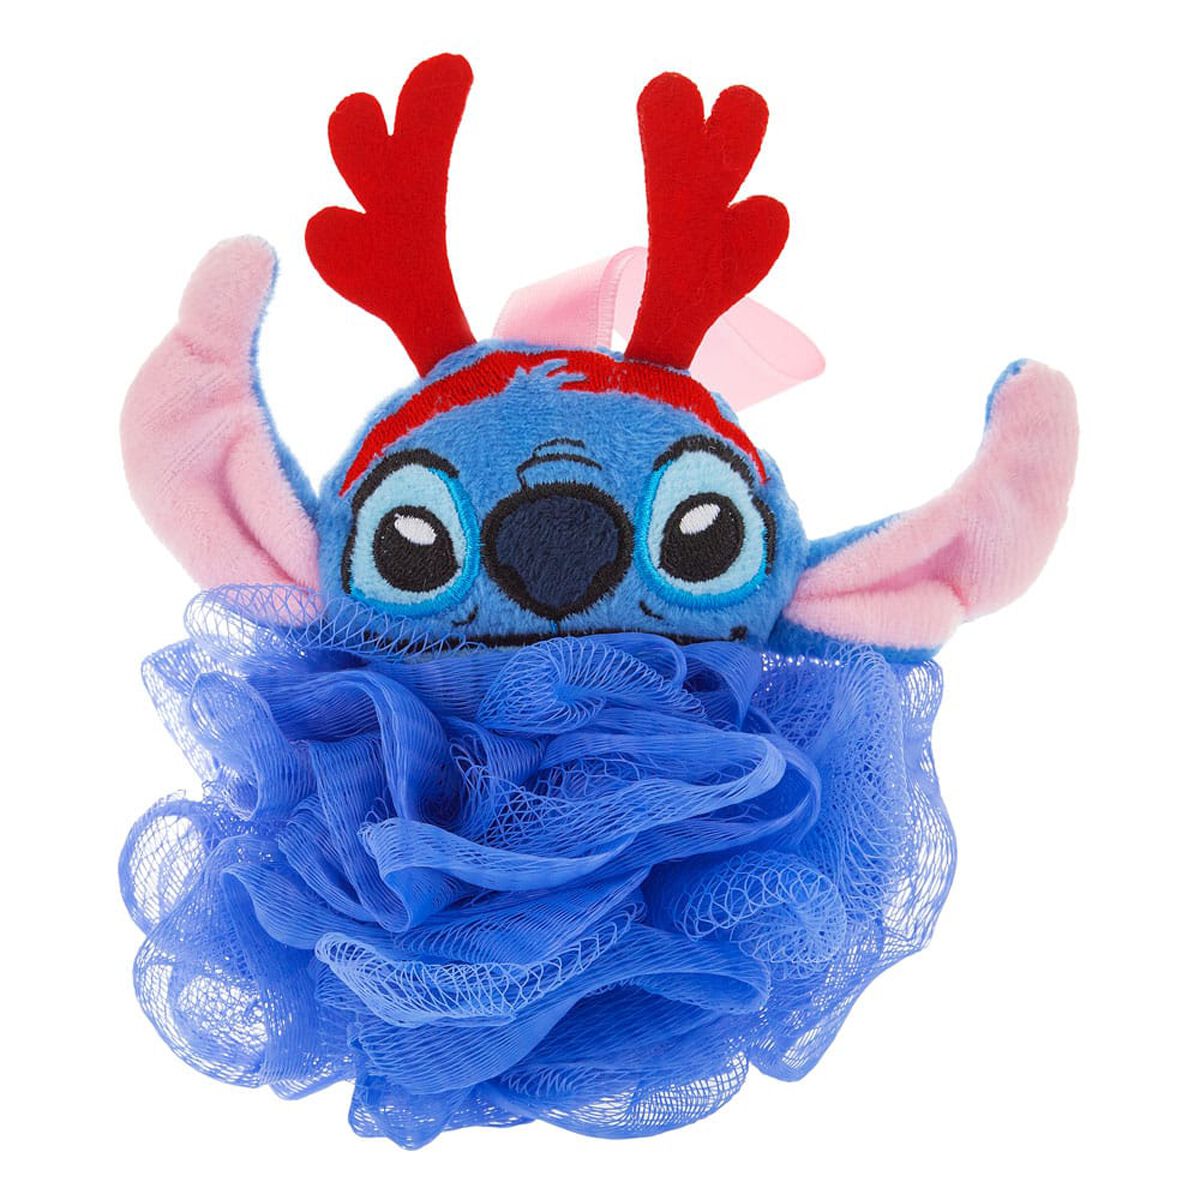 Lilo & Stitch - Disney Badzubehör - Mad Beauty - Stitch Badeschwamm   - Lizenzierter Fanartikel product